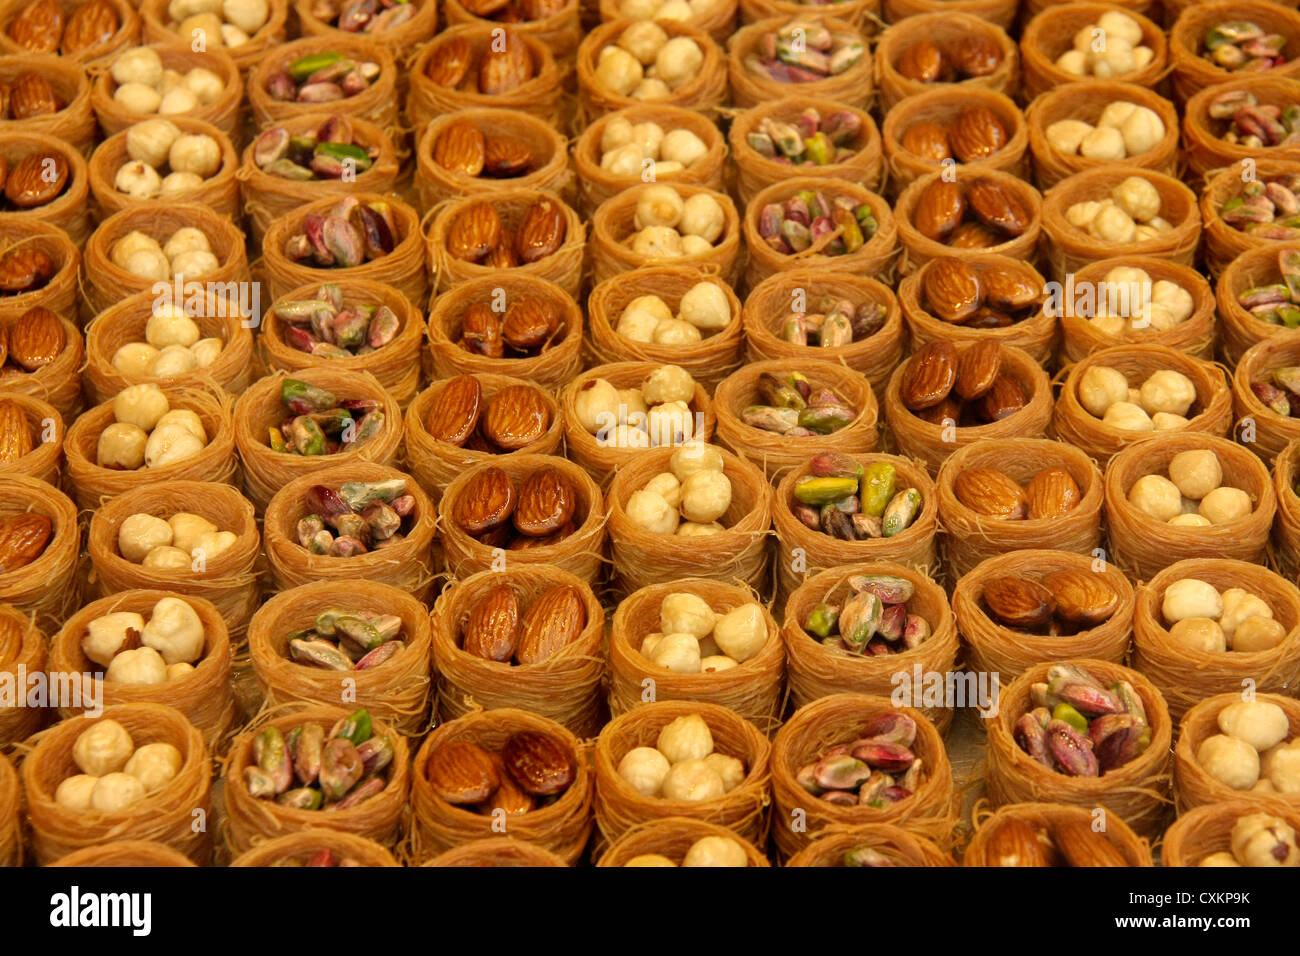 turkish baklava and turkish delight Stock Photo